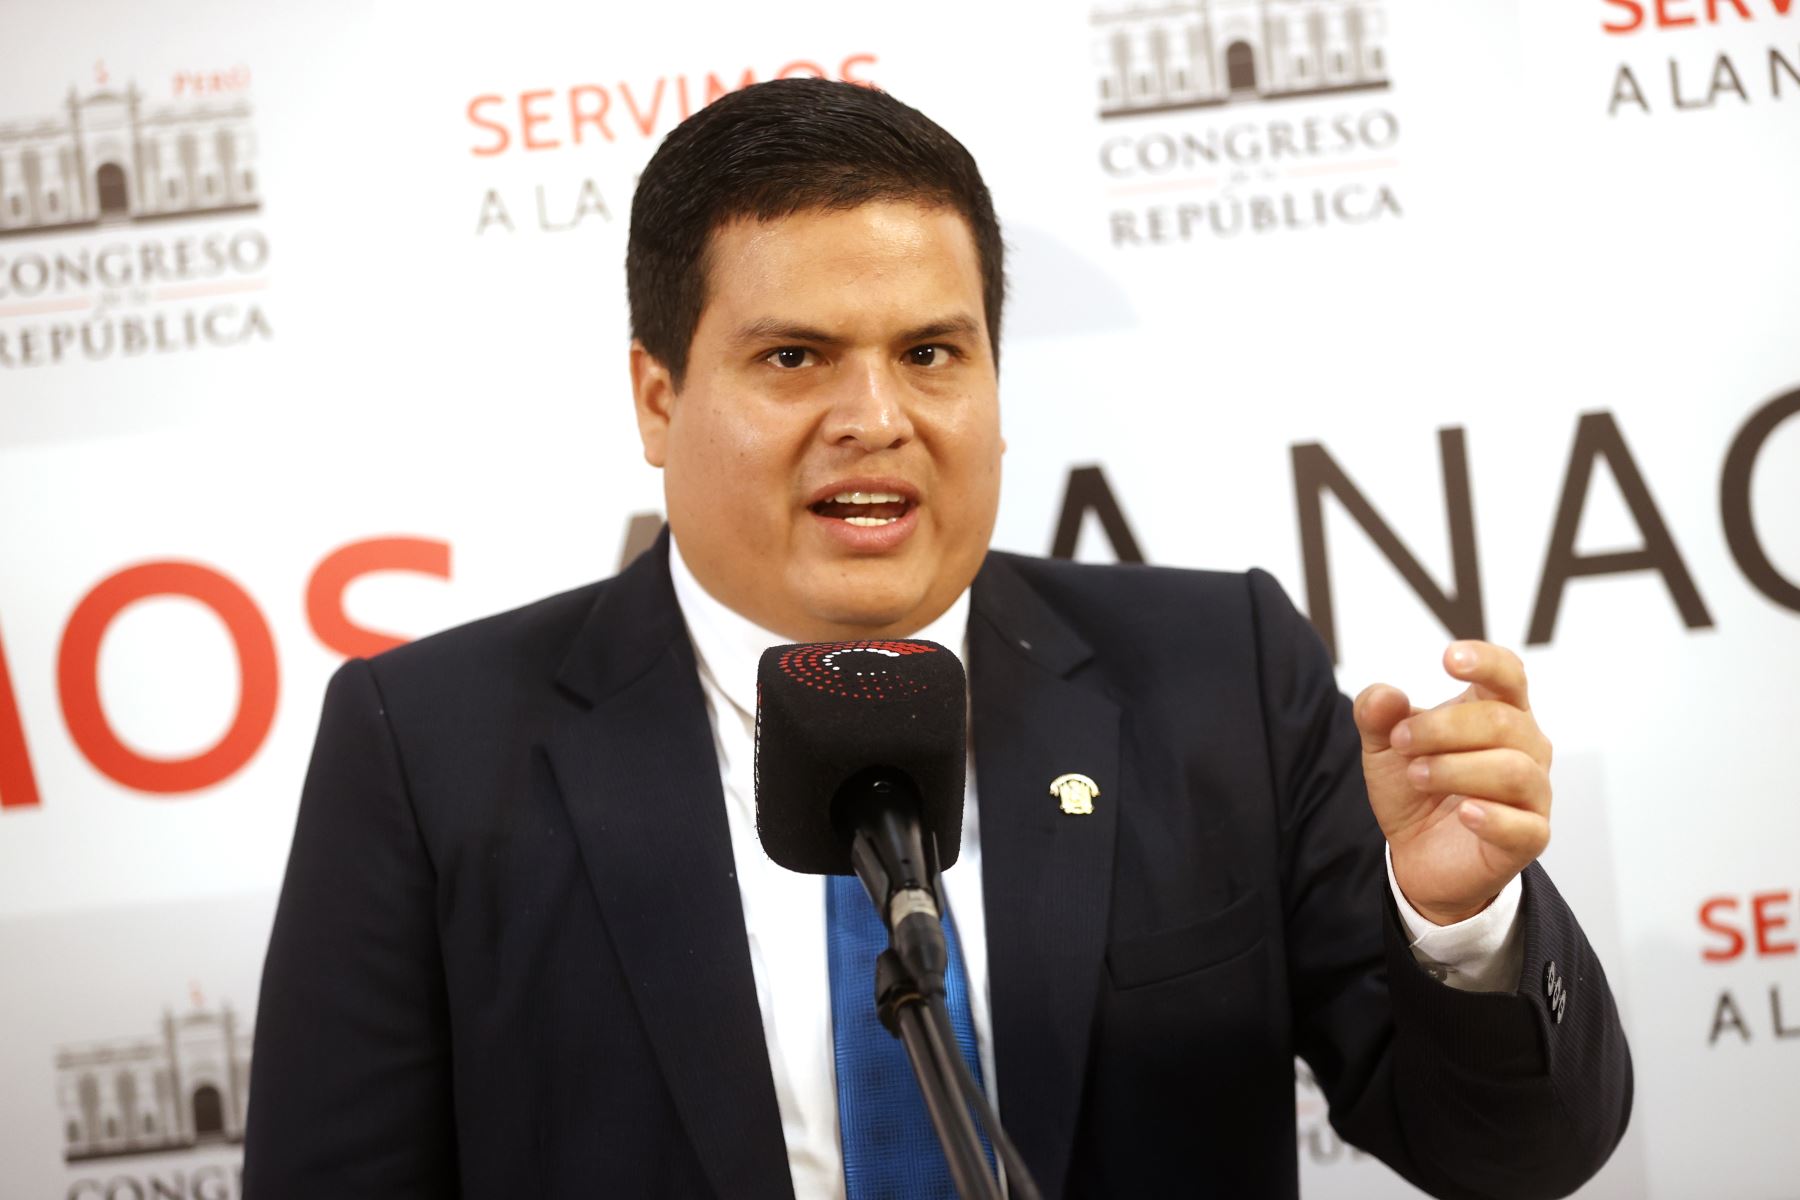 Congresista Diego Bazán renuncia a la bancada de Avanza País